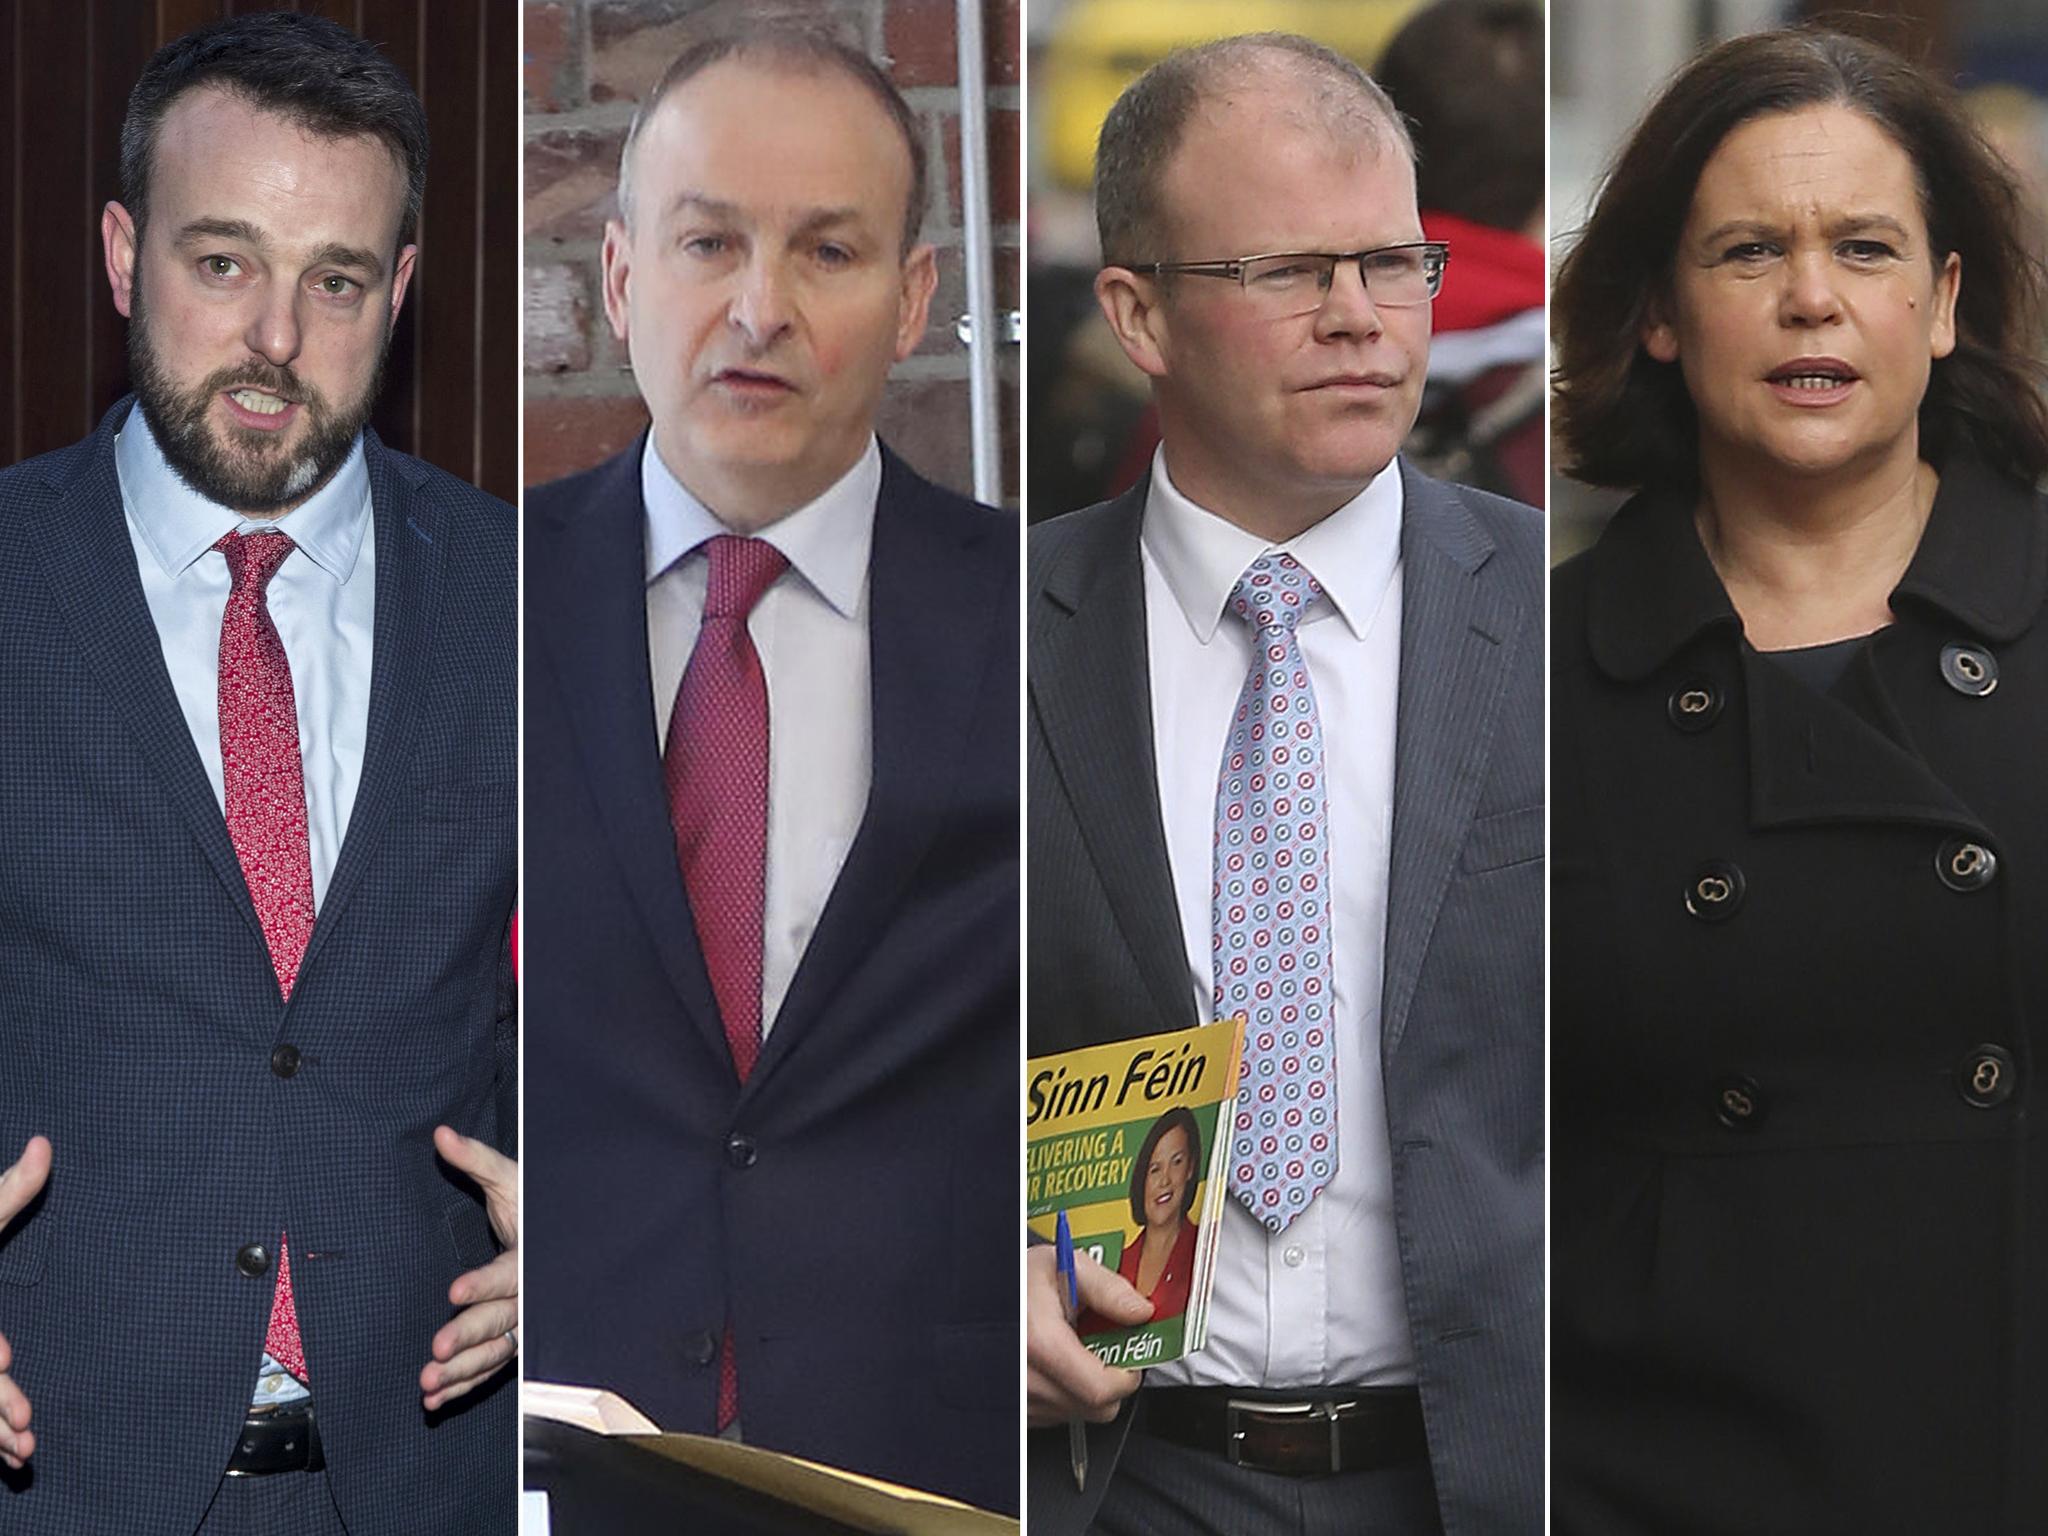 Left to right, SDLP leader Colum Eastwood, Fianna Fáil leader Micheál Martin, Aontú leader Peadar Tóibín and Sinn Féin leader Mary Lou McDonald